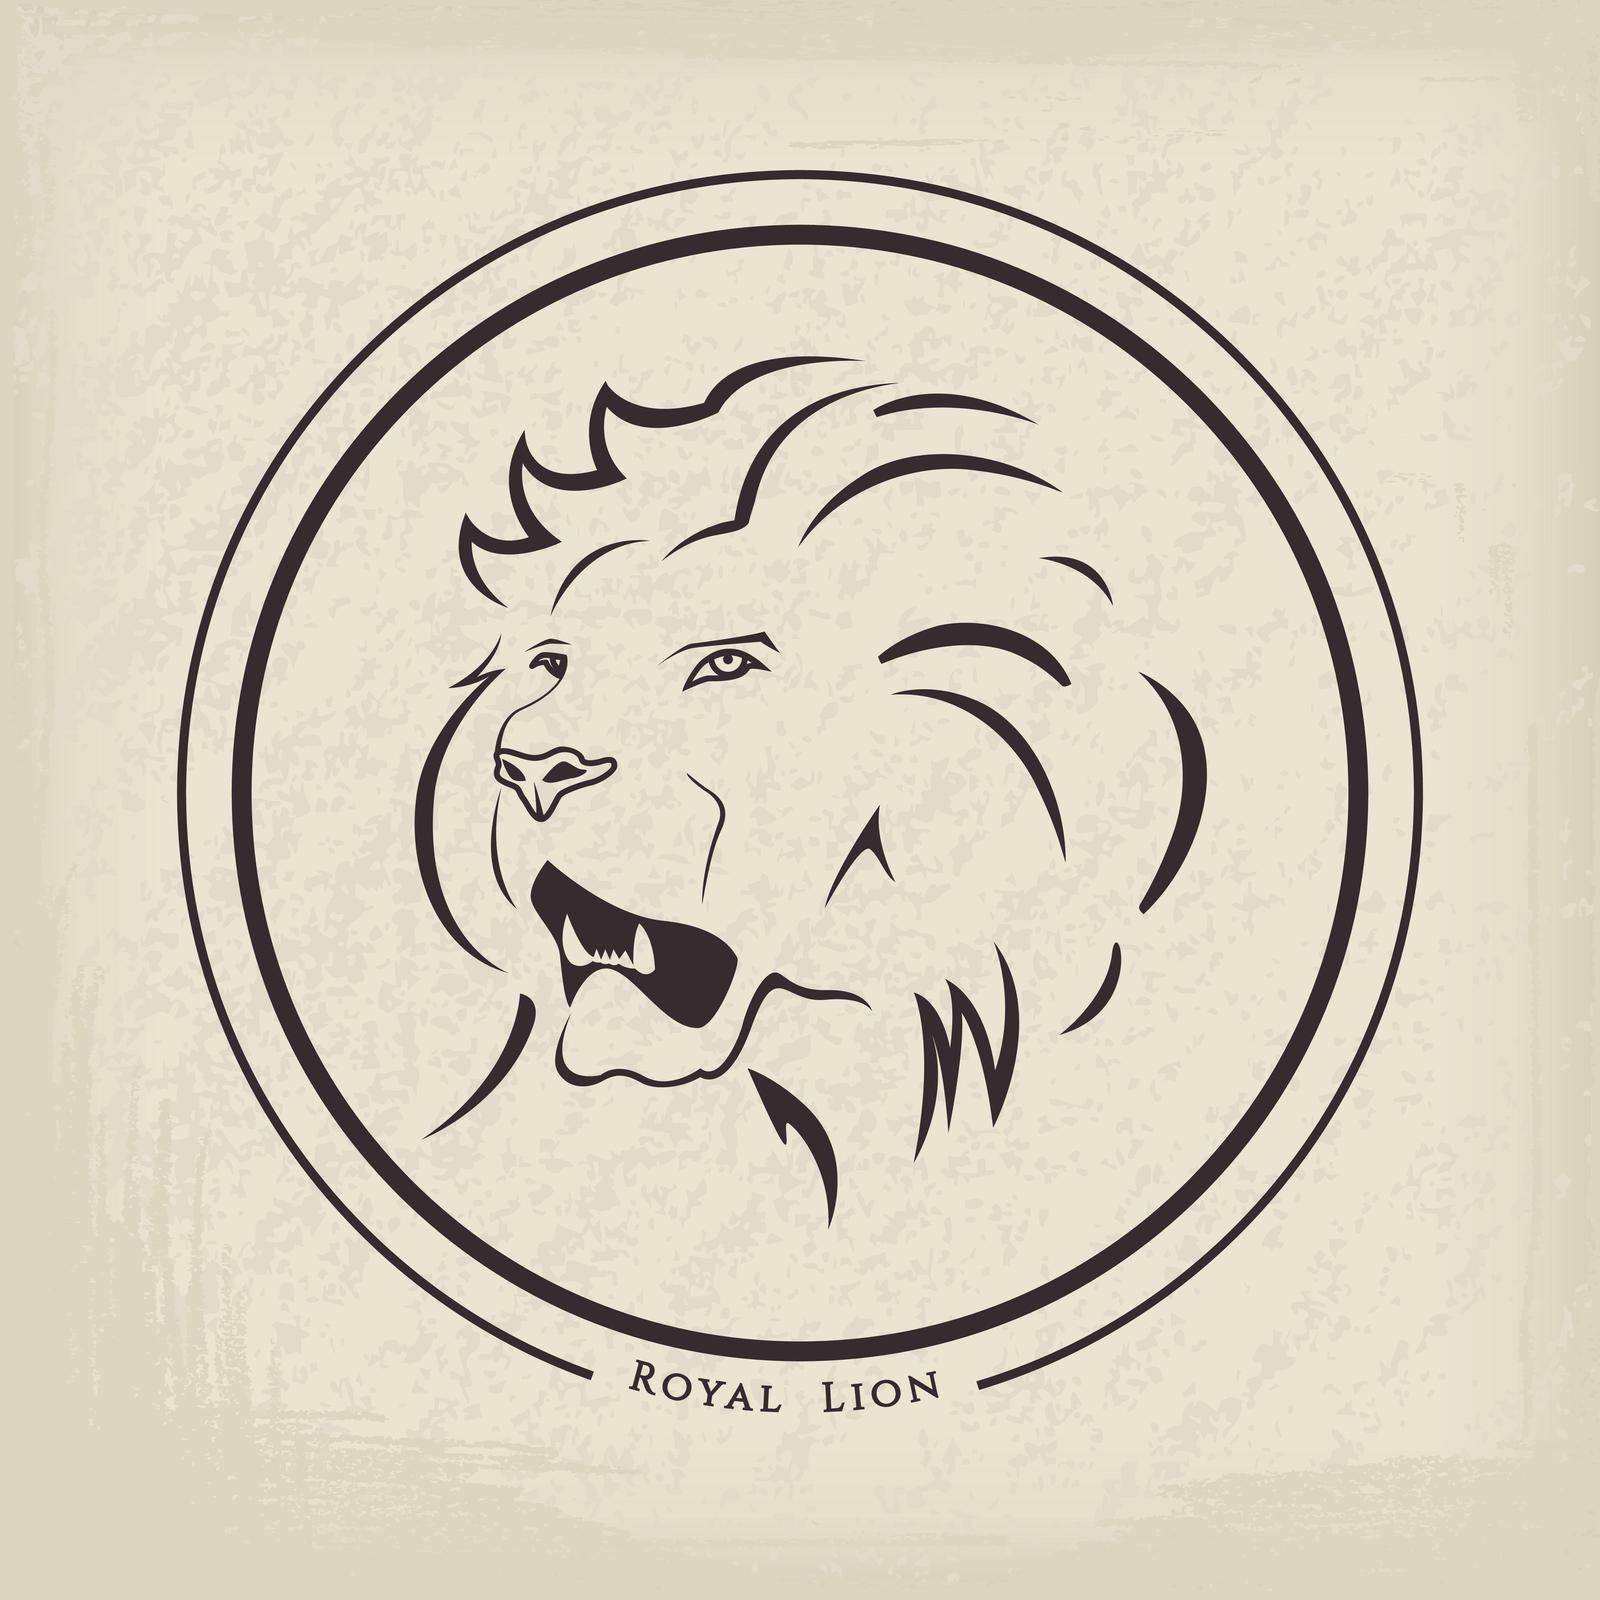 Lion emblem on grunge background. Vector illustration